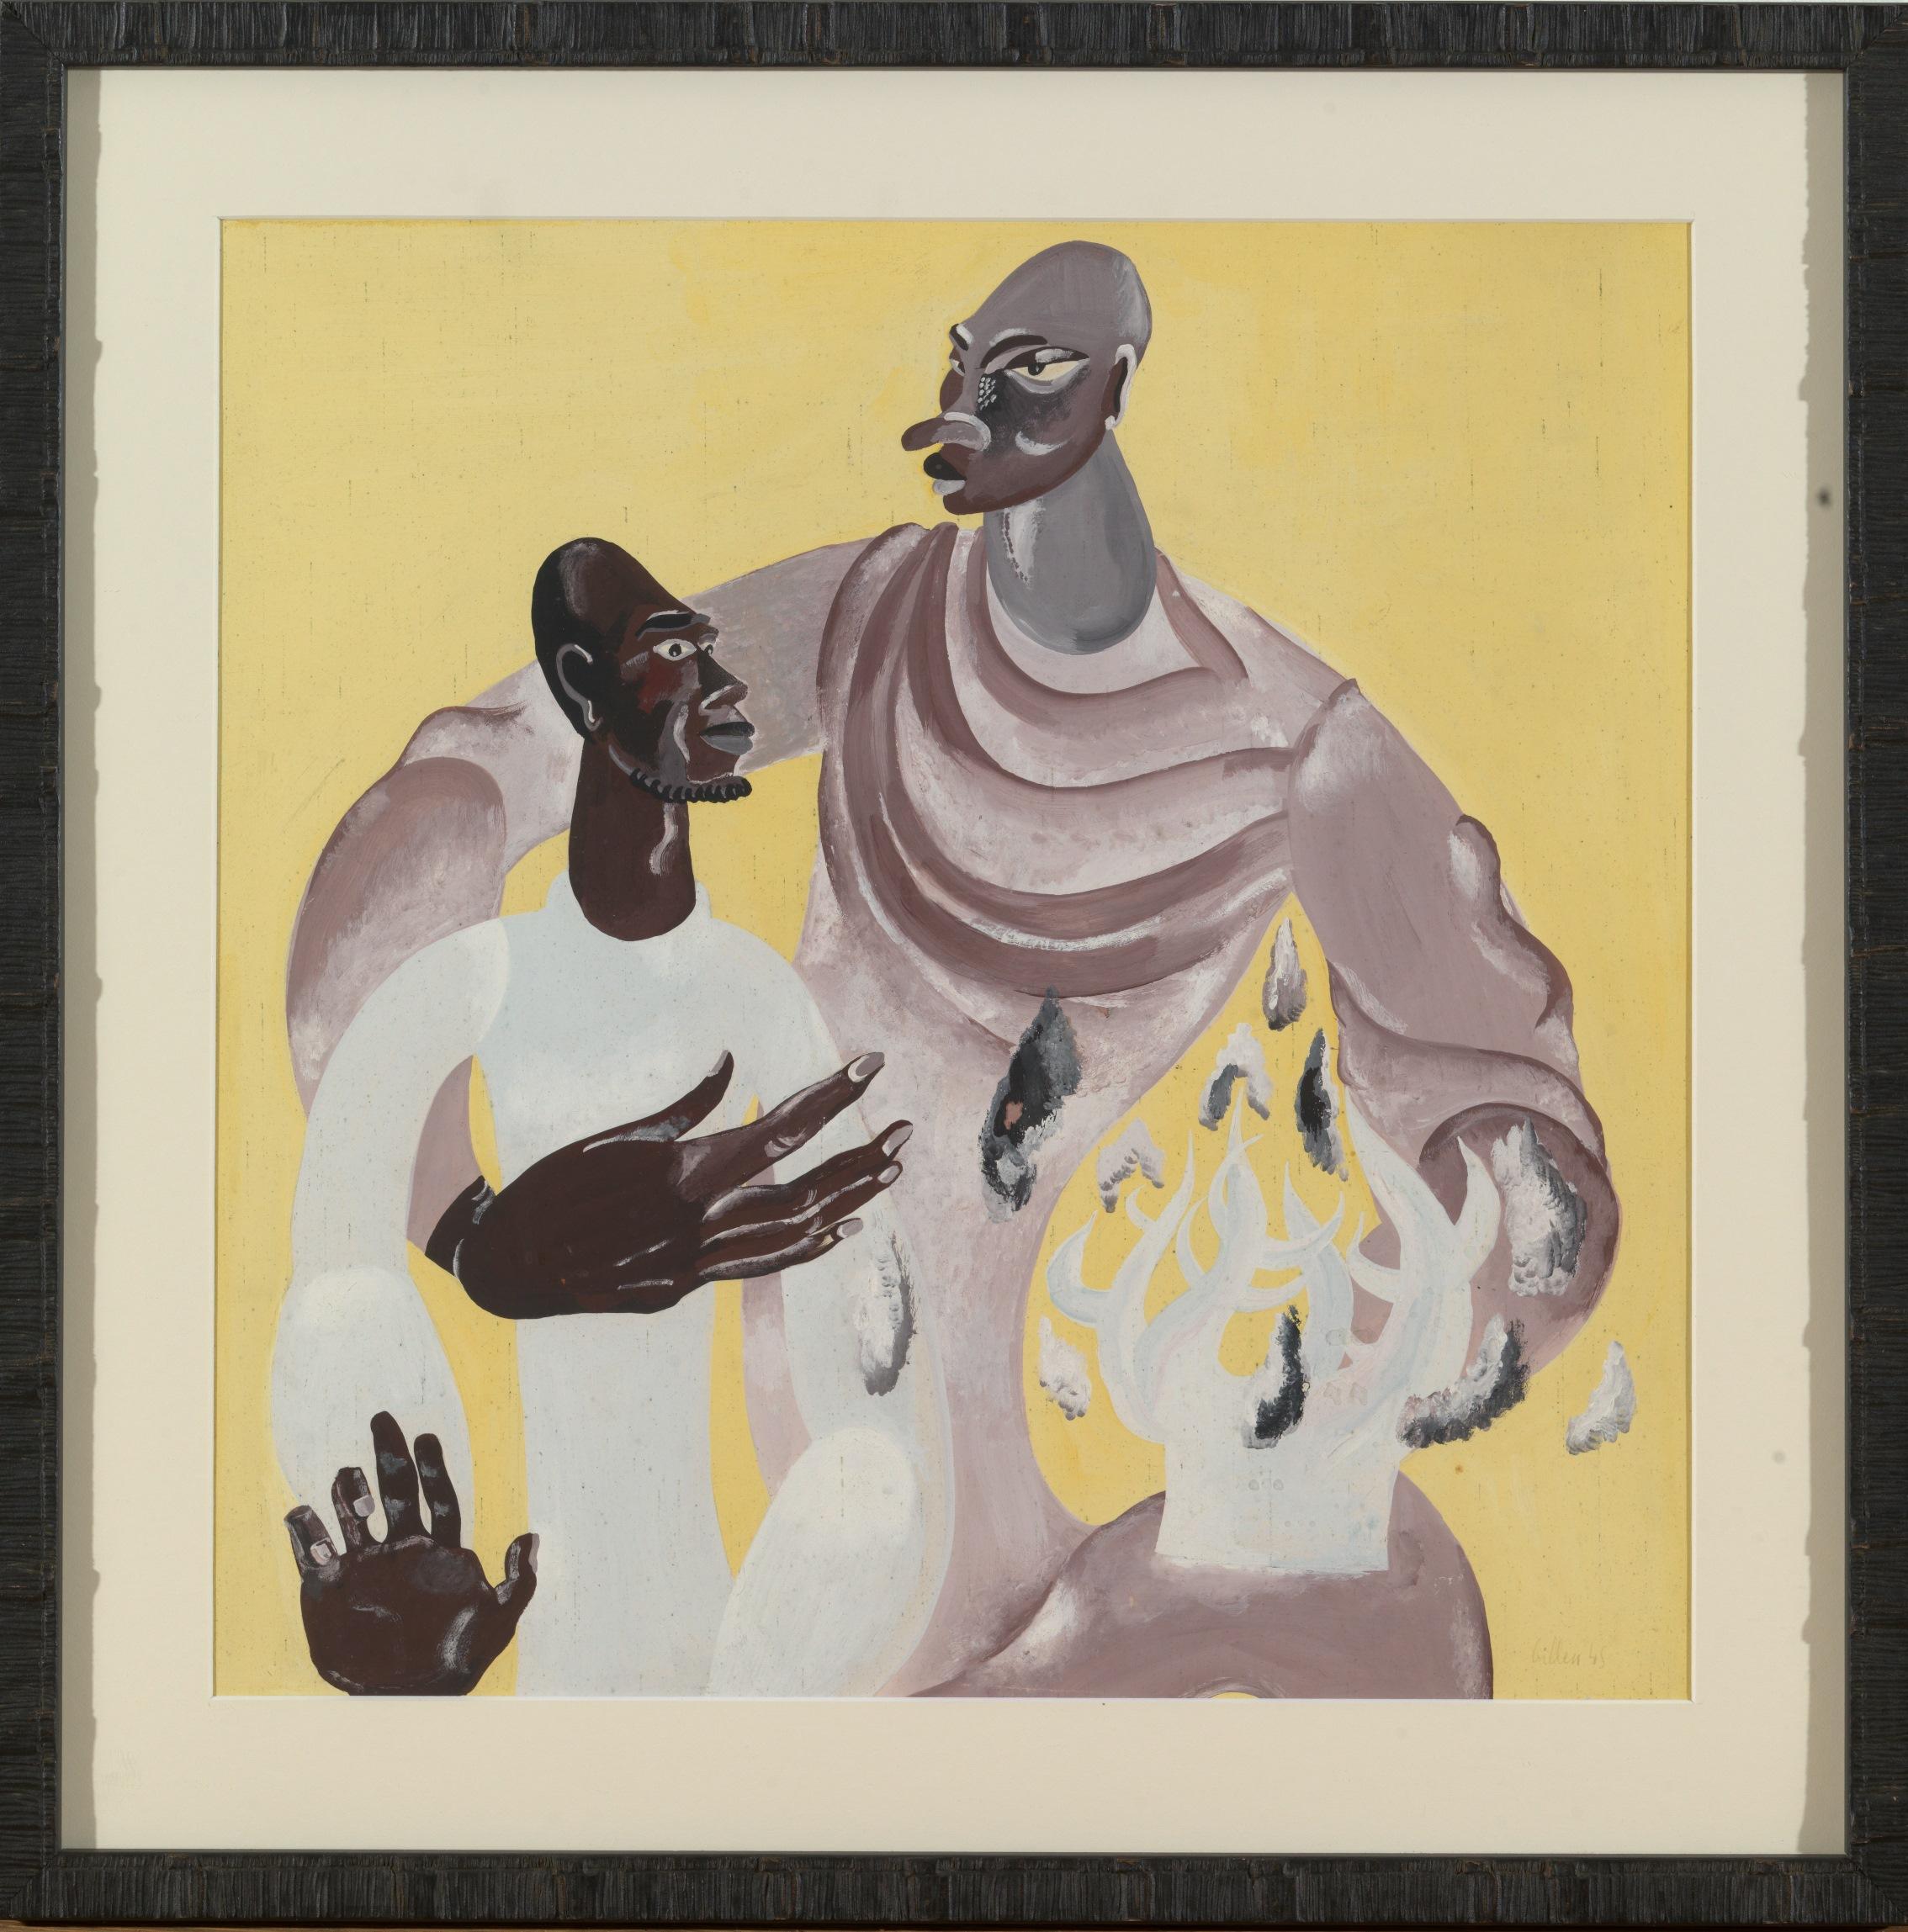 Cette magnifique œuvre d'art représente deux figures Kongo masculines.
L'œuvre de l'artiste André Billen (1921-1998) est profondément influencée par la culture africaine.
 
Les mesures de cette pièce sont 41 x 41 cm sans cadre, 53,5 x 53,5 cm